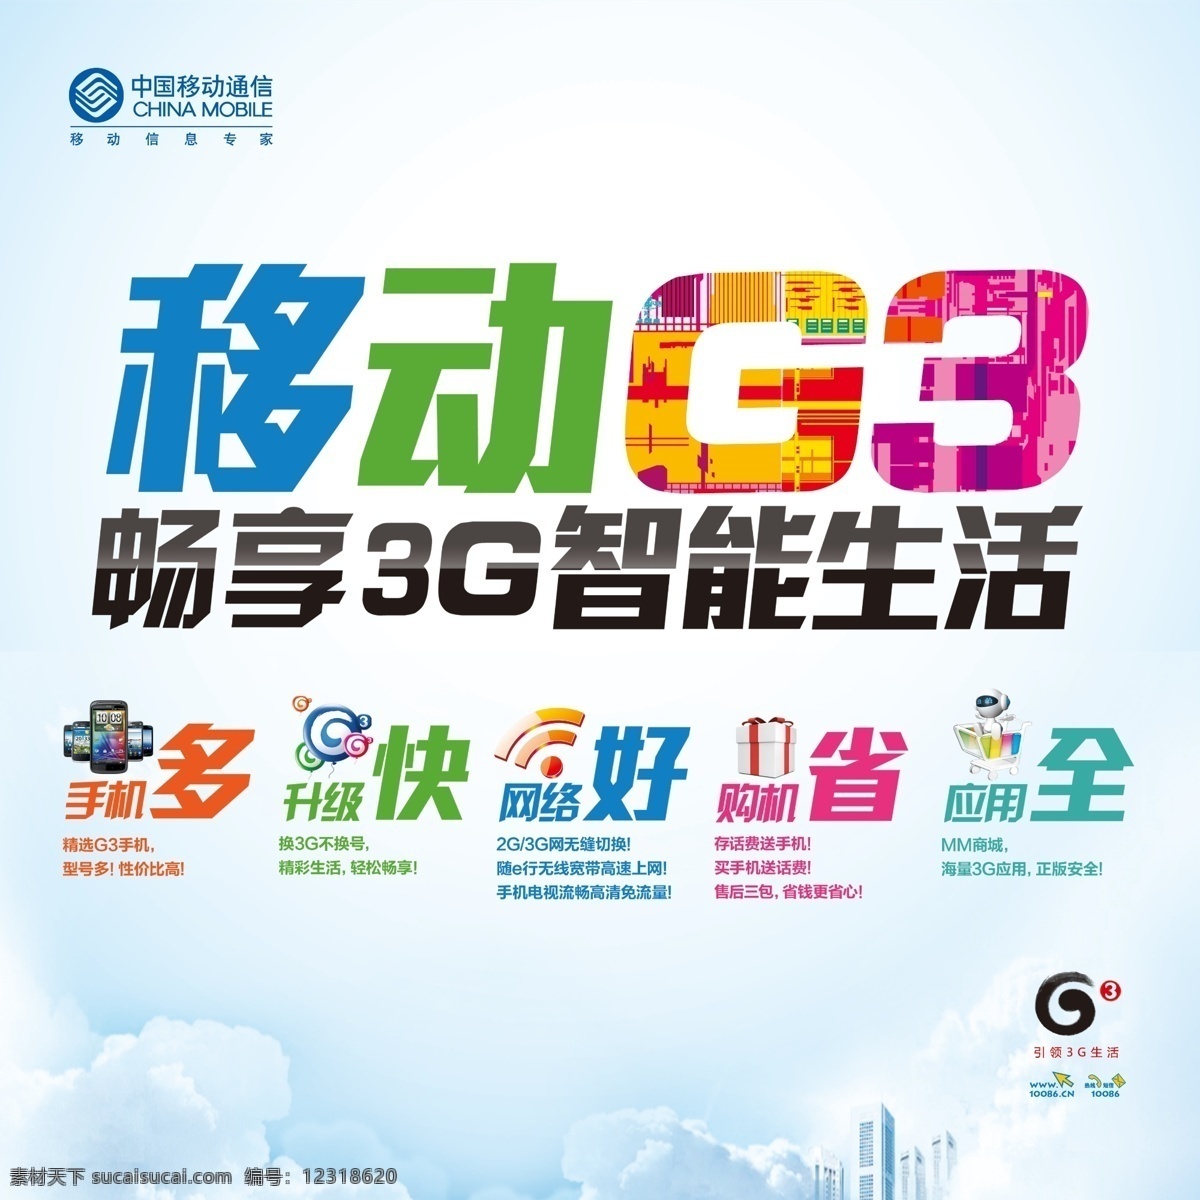 3g g3 广告设计模板 手机 宣传 源文件 展板 中国移动 背板 智能生活 展板模板 矢量图 现代科技